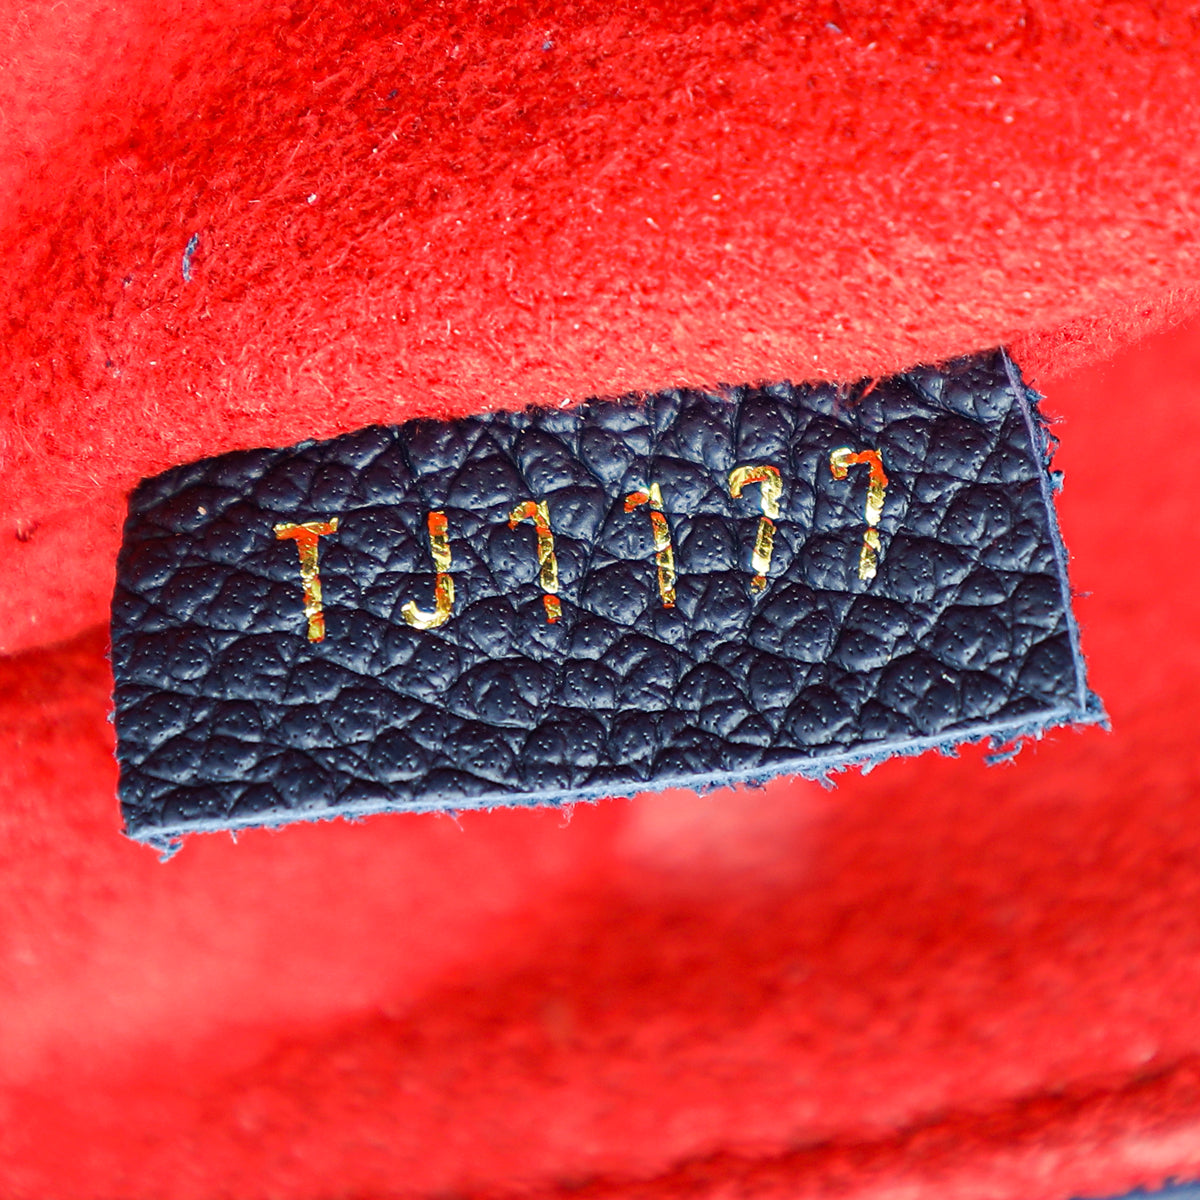 Authenticated Used LOUIS VUITTON Louis Vuitton Saint-Sulpice PM Shoulder  Bag M43394 Monogram Implant Marine Rouge 2WAY Chain Diagonal Hanging